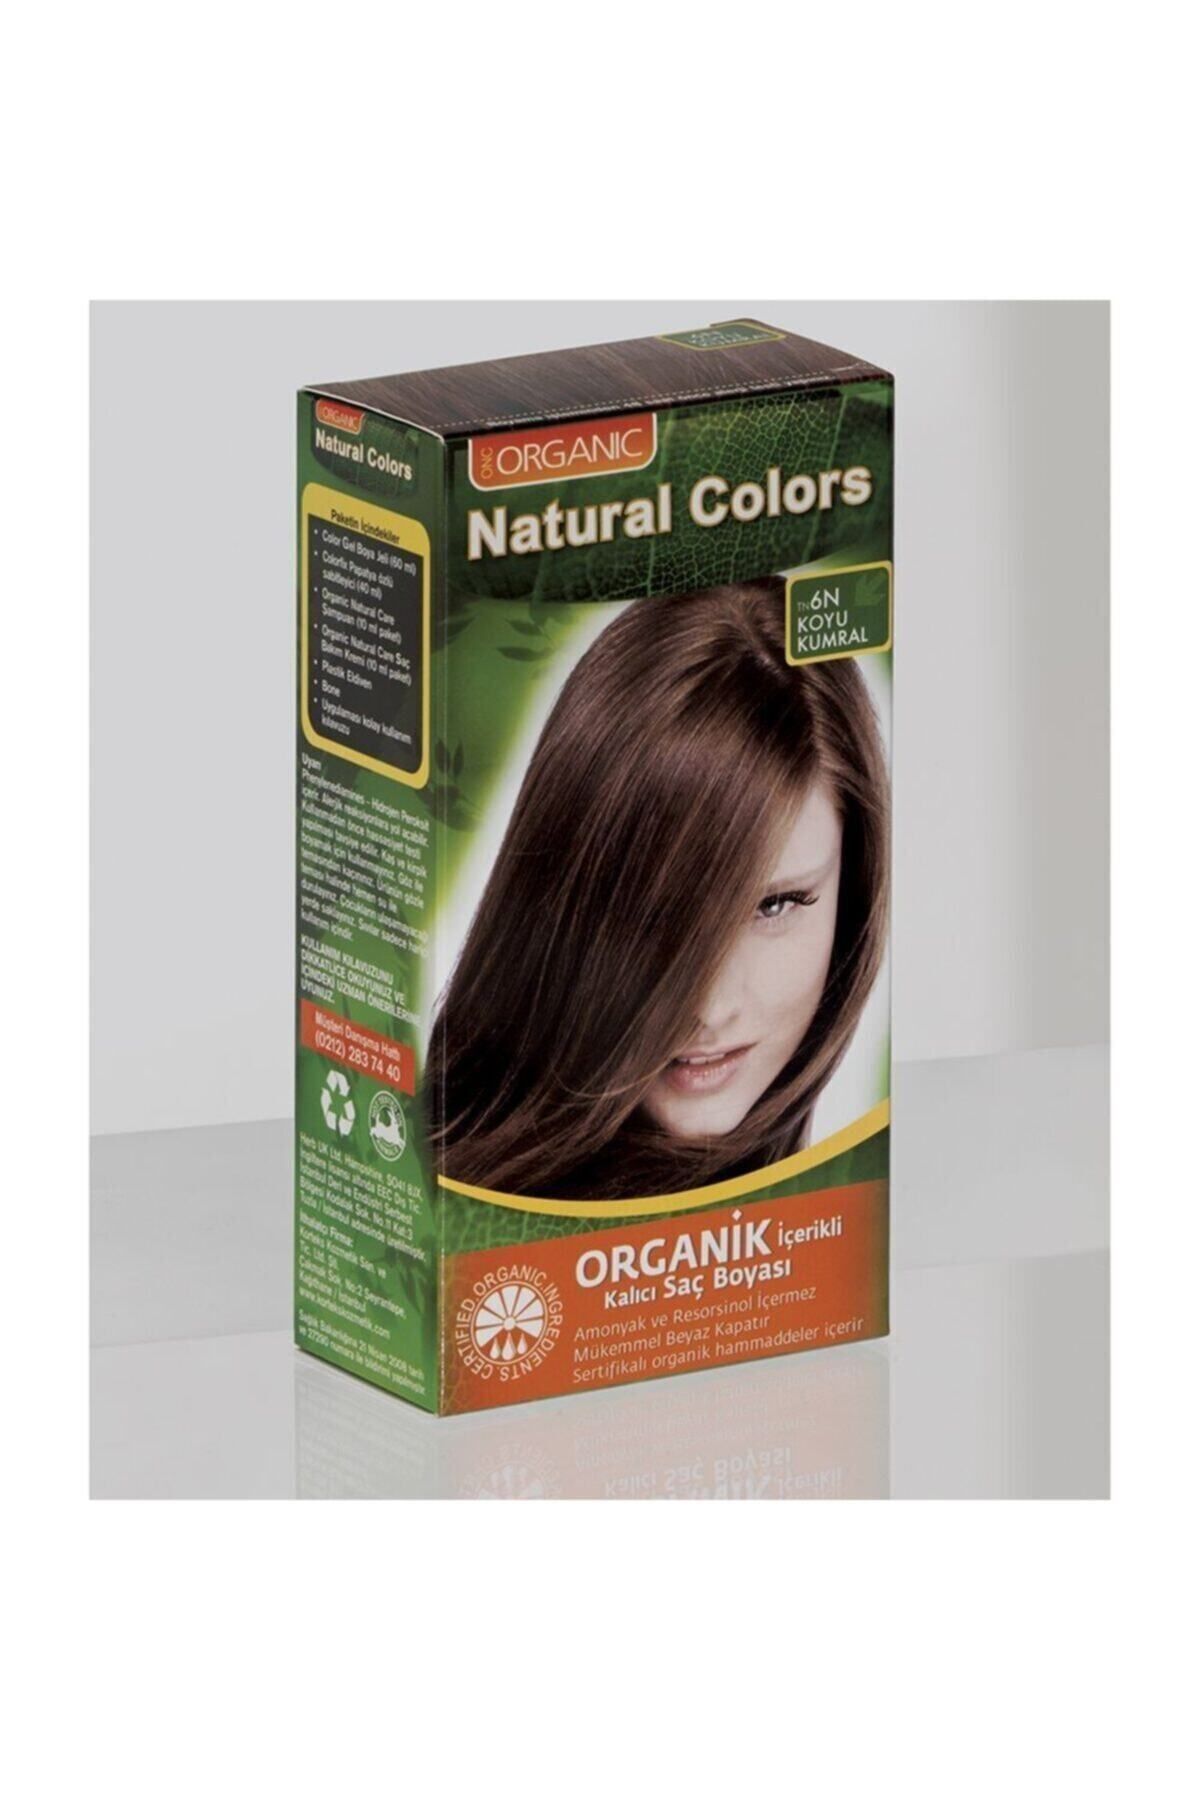 Organic Natural Colors Natural Colors 6n Koyu Kumral Organik Saç Boyası